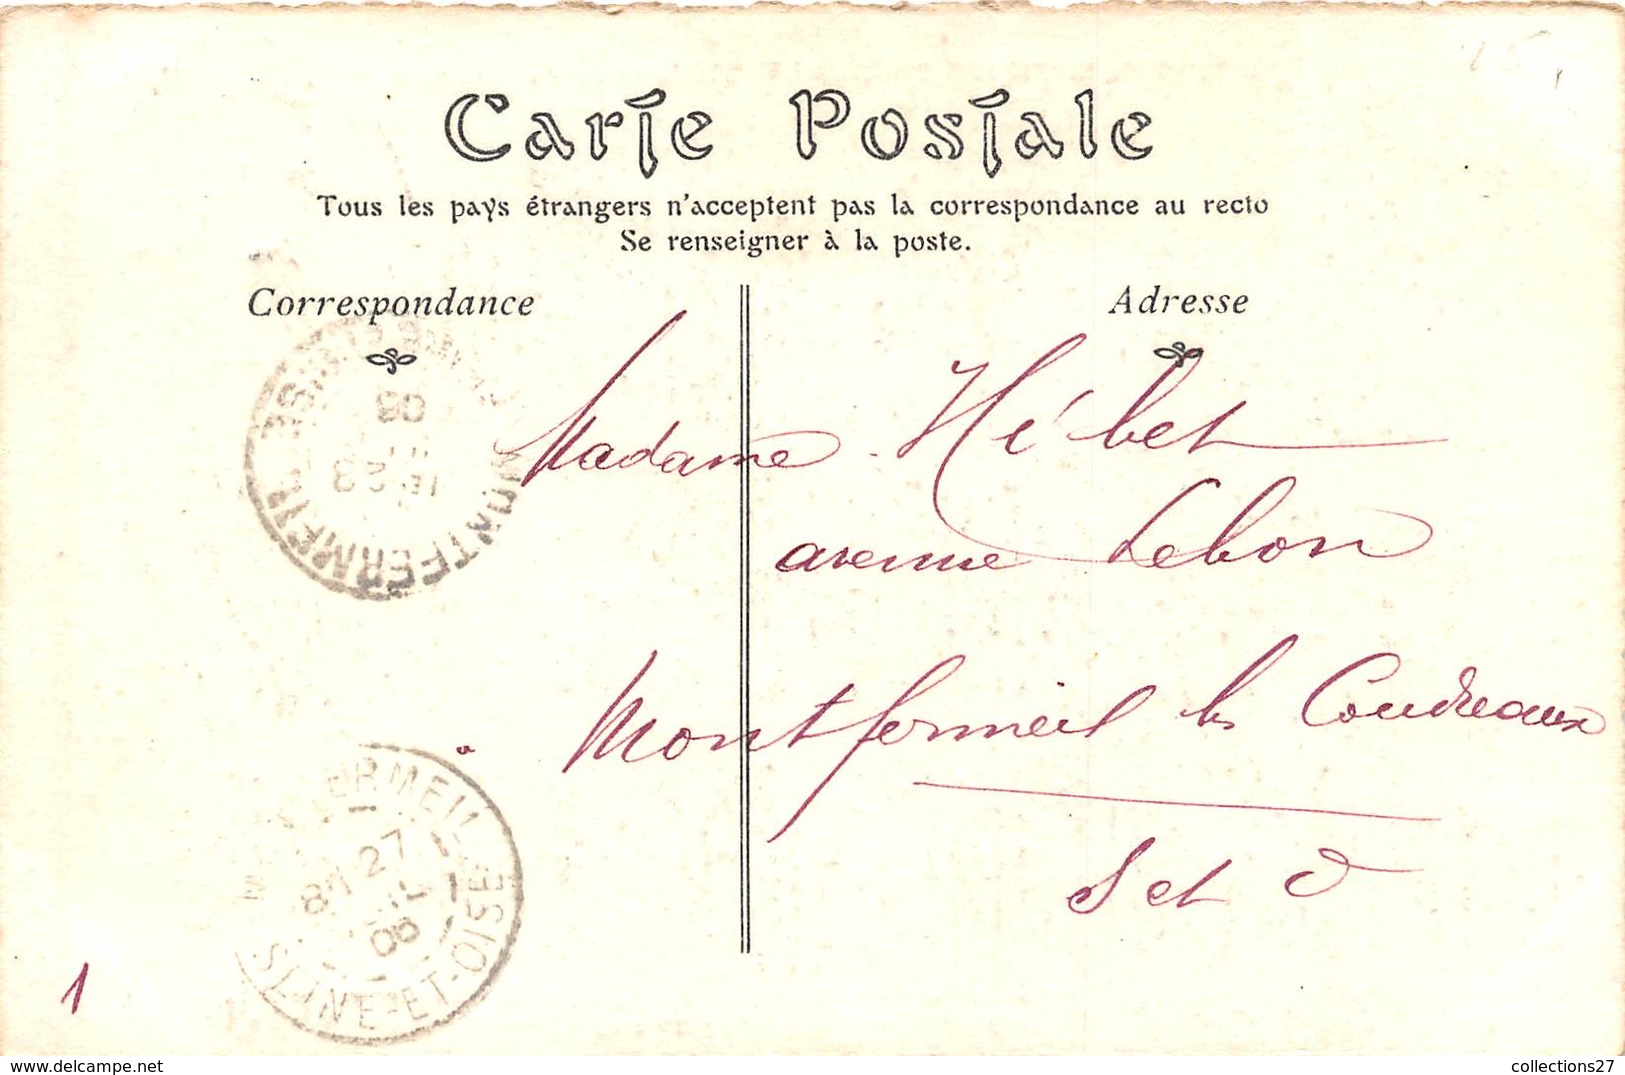 PARIS-ANCIEN PARIS-LE CARNAVAL EN 1810 - Pariser Métro, Bahnhöfe